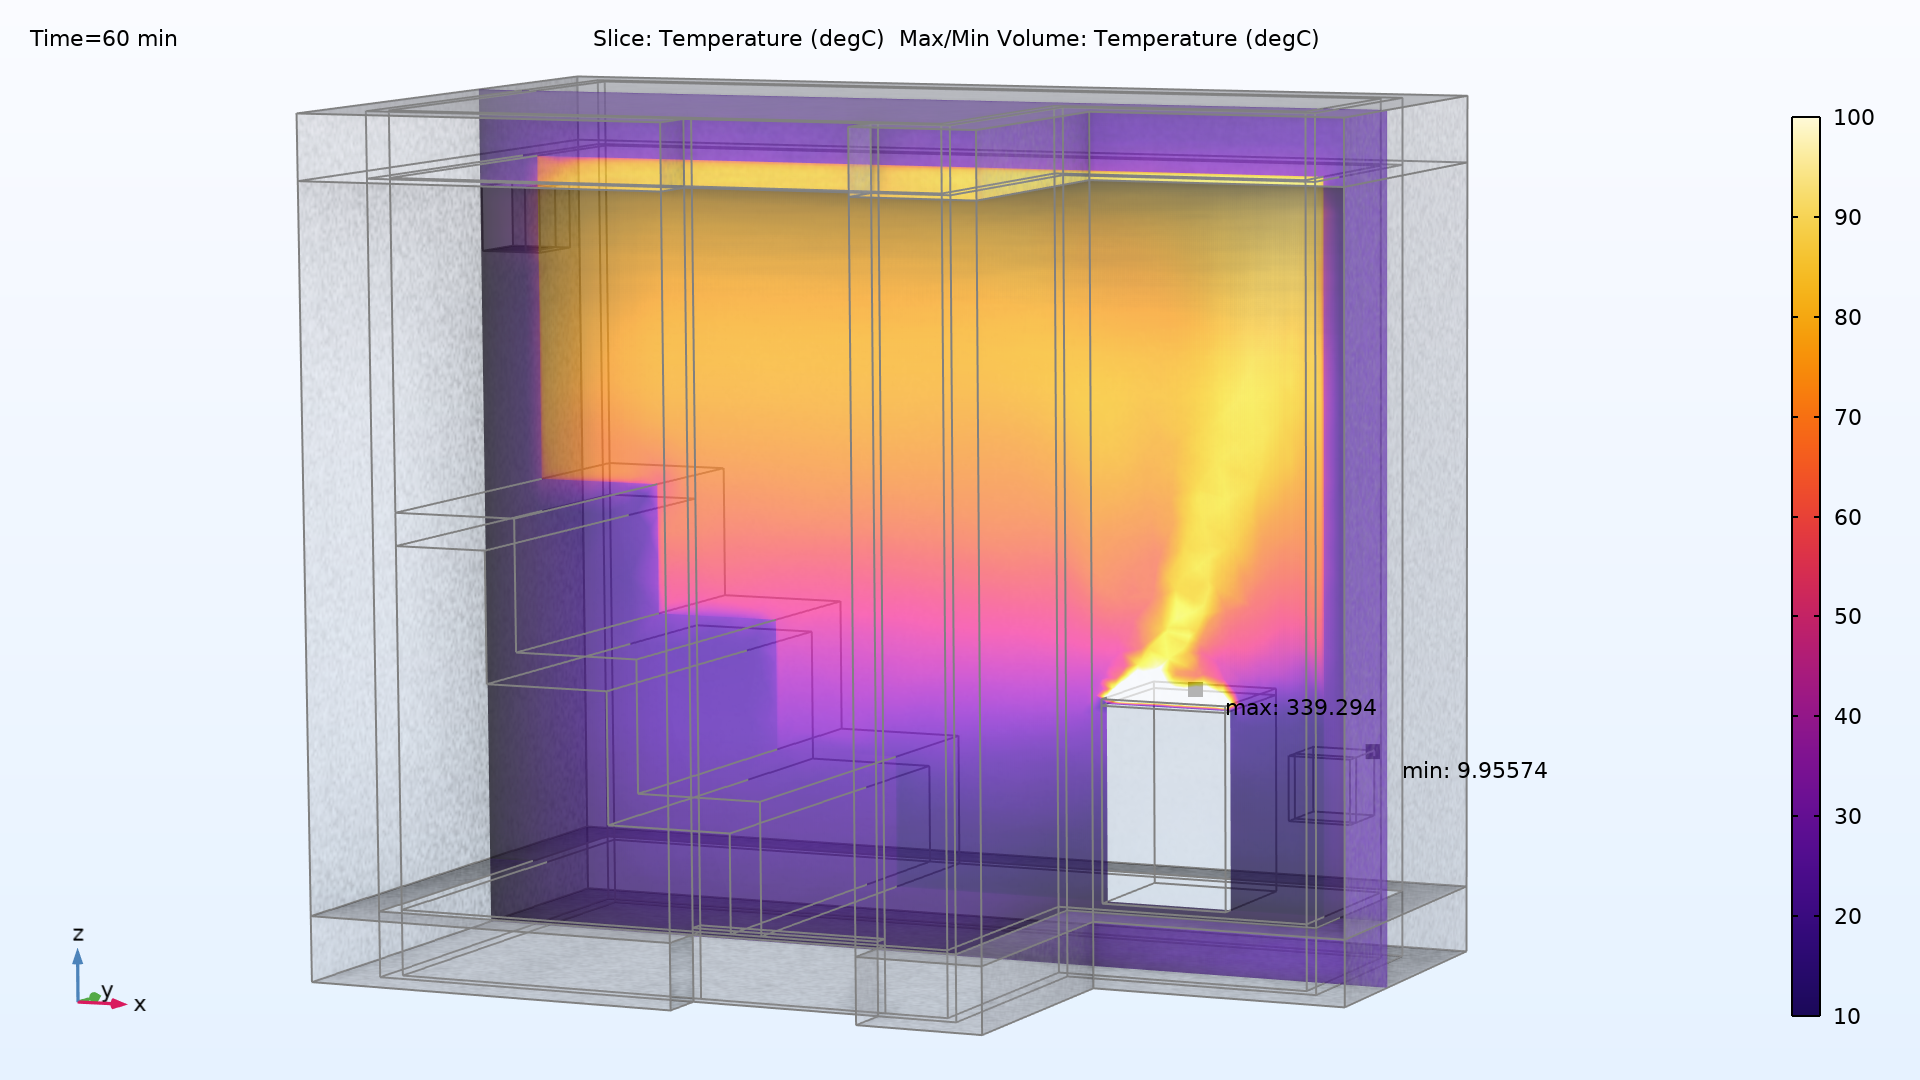 用 HeatCamera 的颜色表显示桑拿房加热60分钟后的温度分布图。桑拿房的底部主要是紫色，中间是紫粉色，而顶部主要是黄色